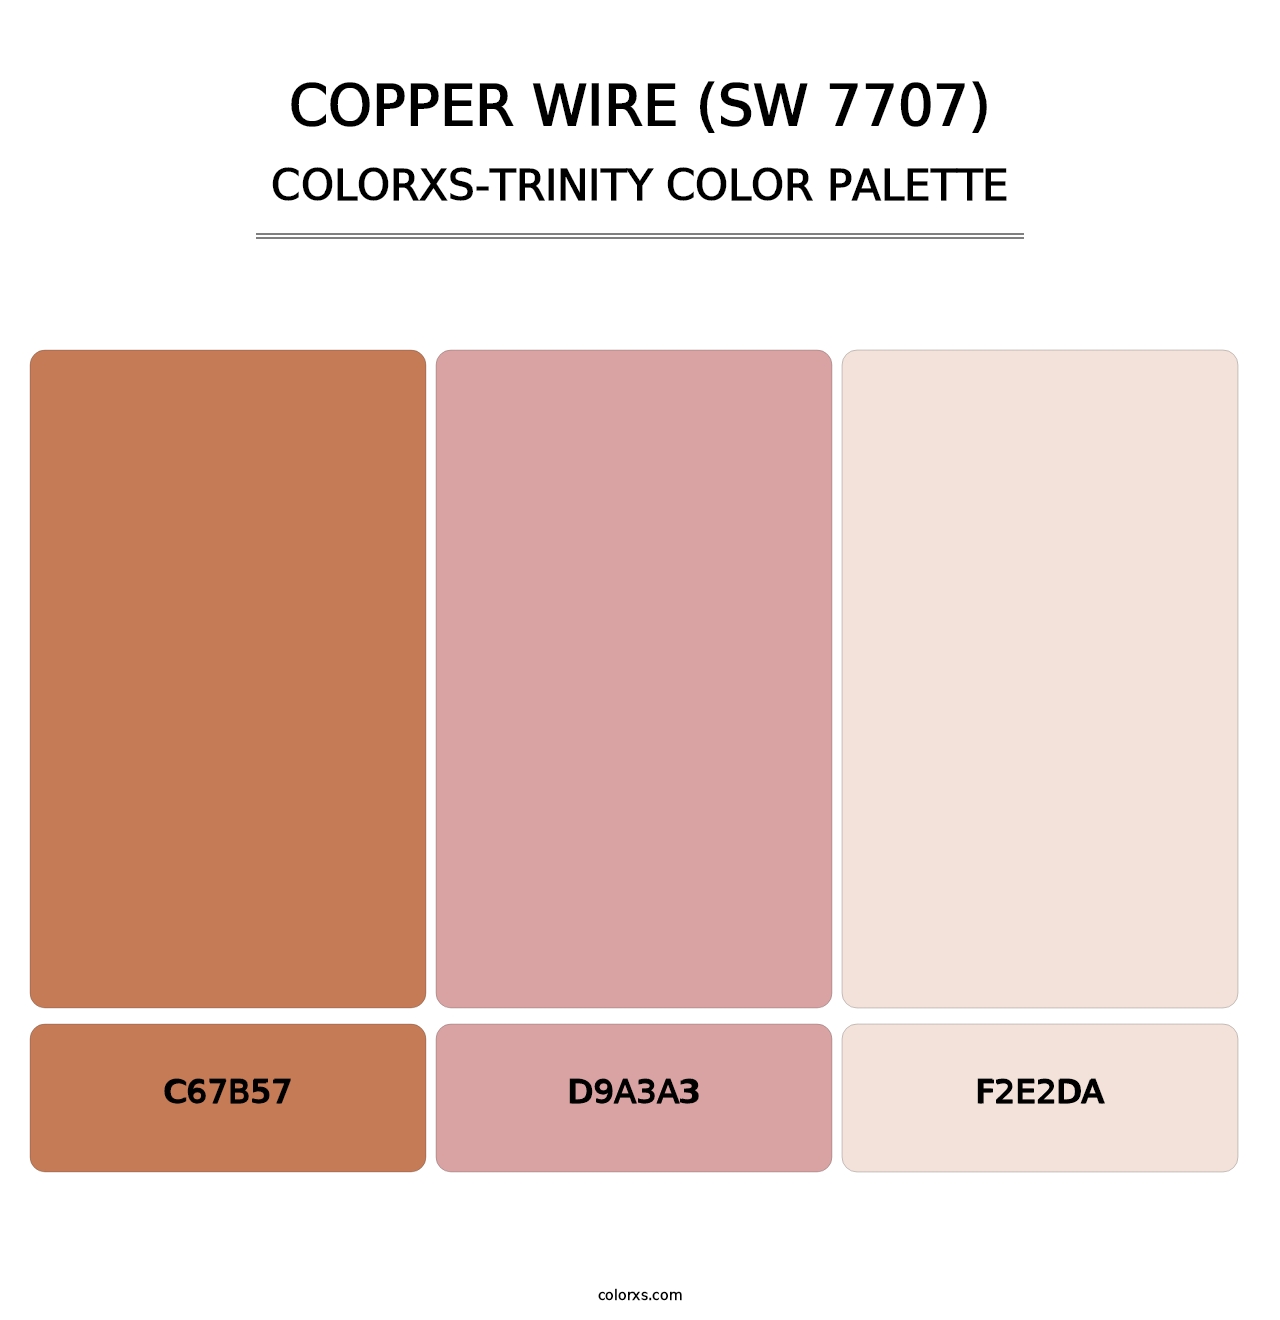 Copper Wire (SW 7707) - Colorxs Trinity Palette